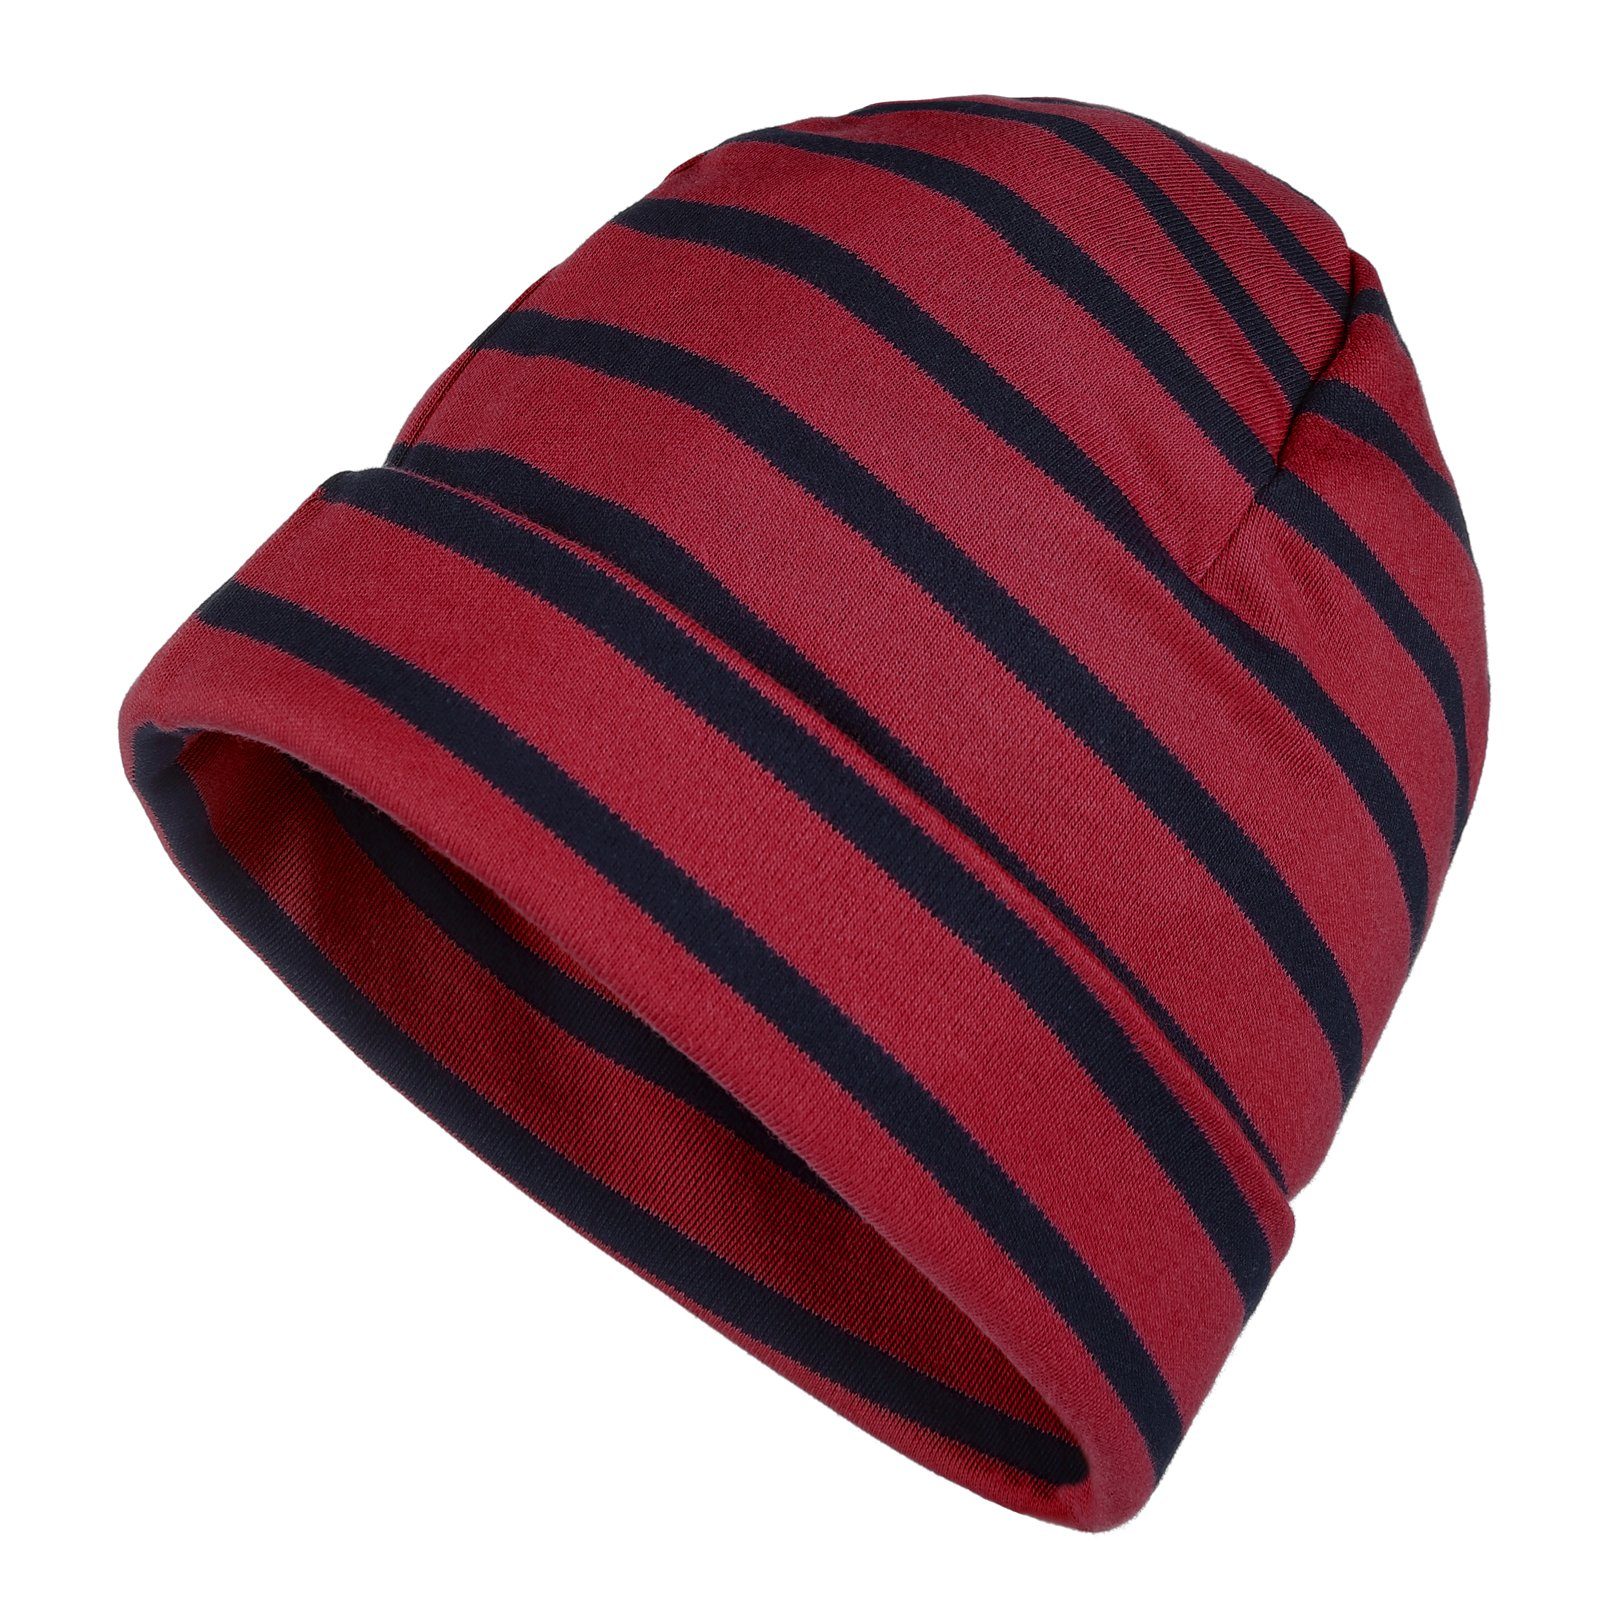 modAS Strickmütze Unisex Mütze Streifen für Kinder & Erwachsene - Ringelmütze Baumwolle (31) rot / blau